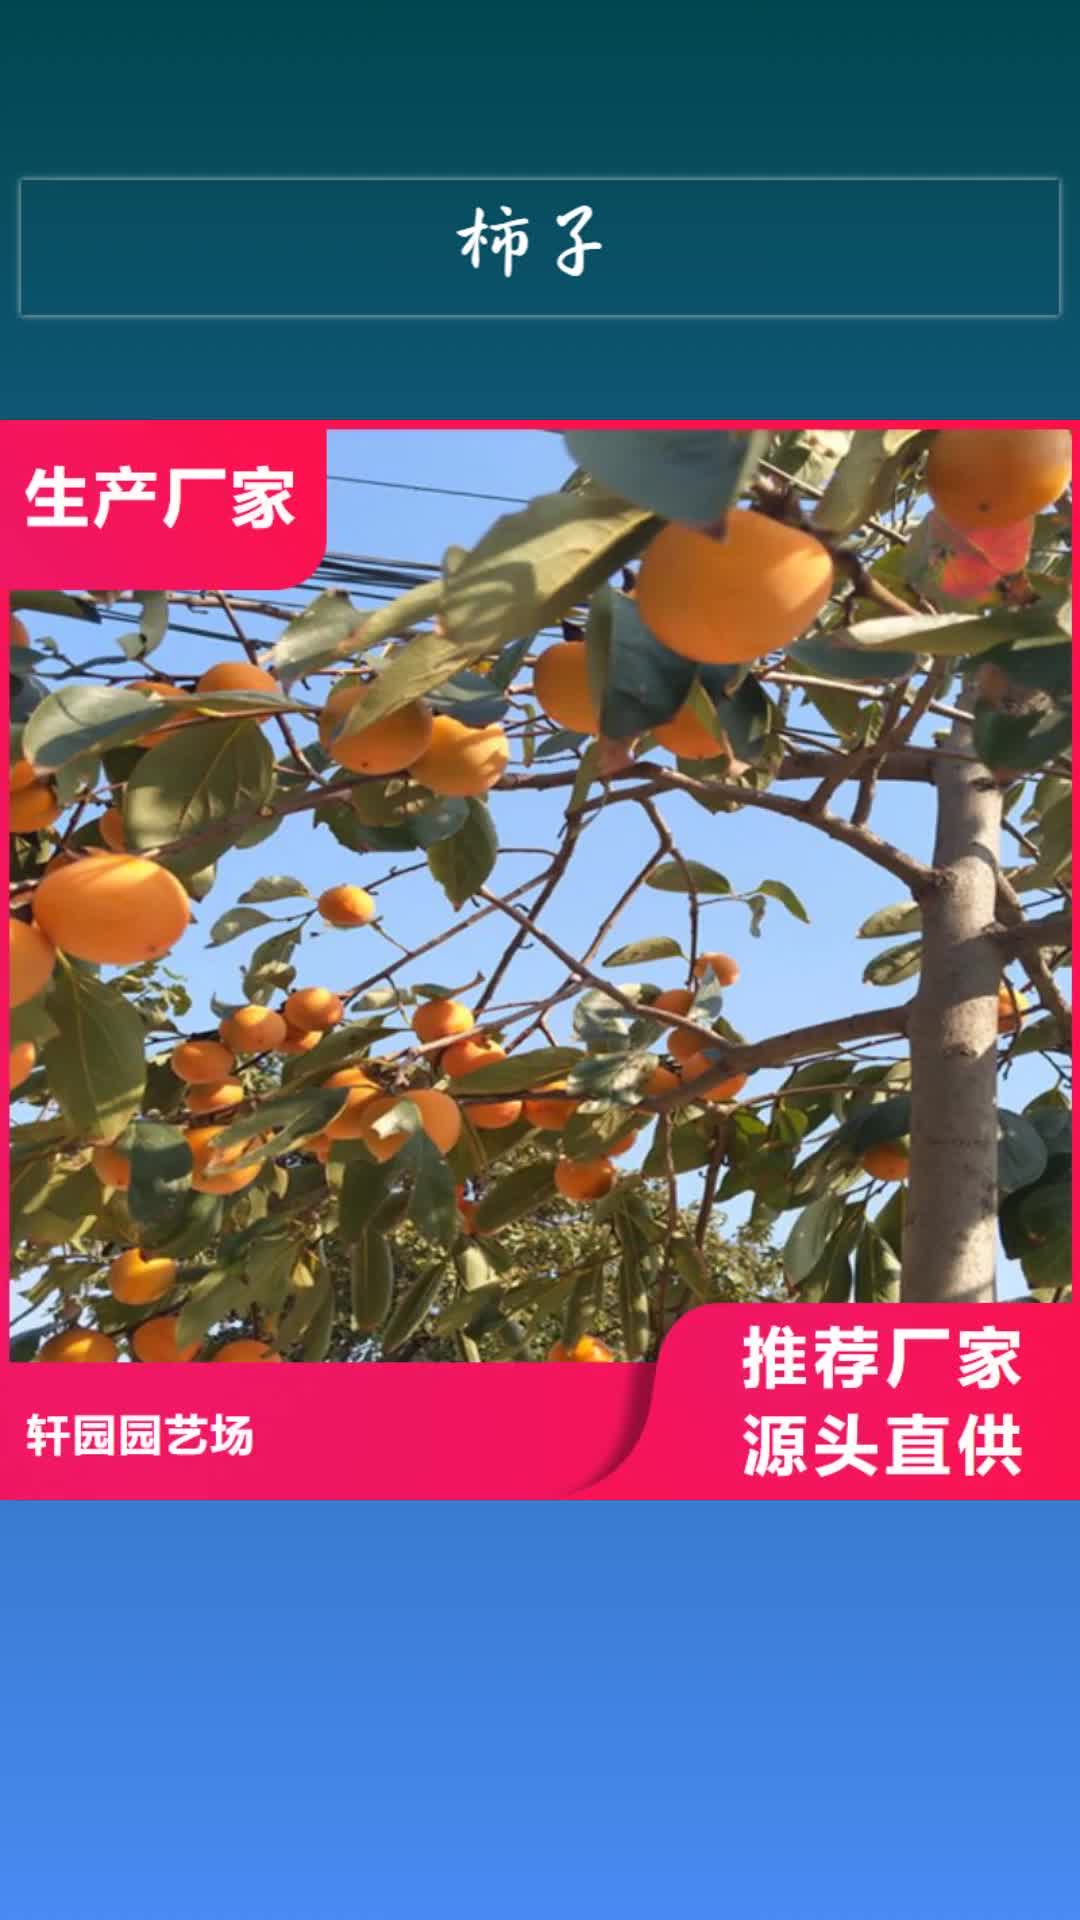 德宏【柿子】苹果苗工期短发货快